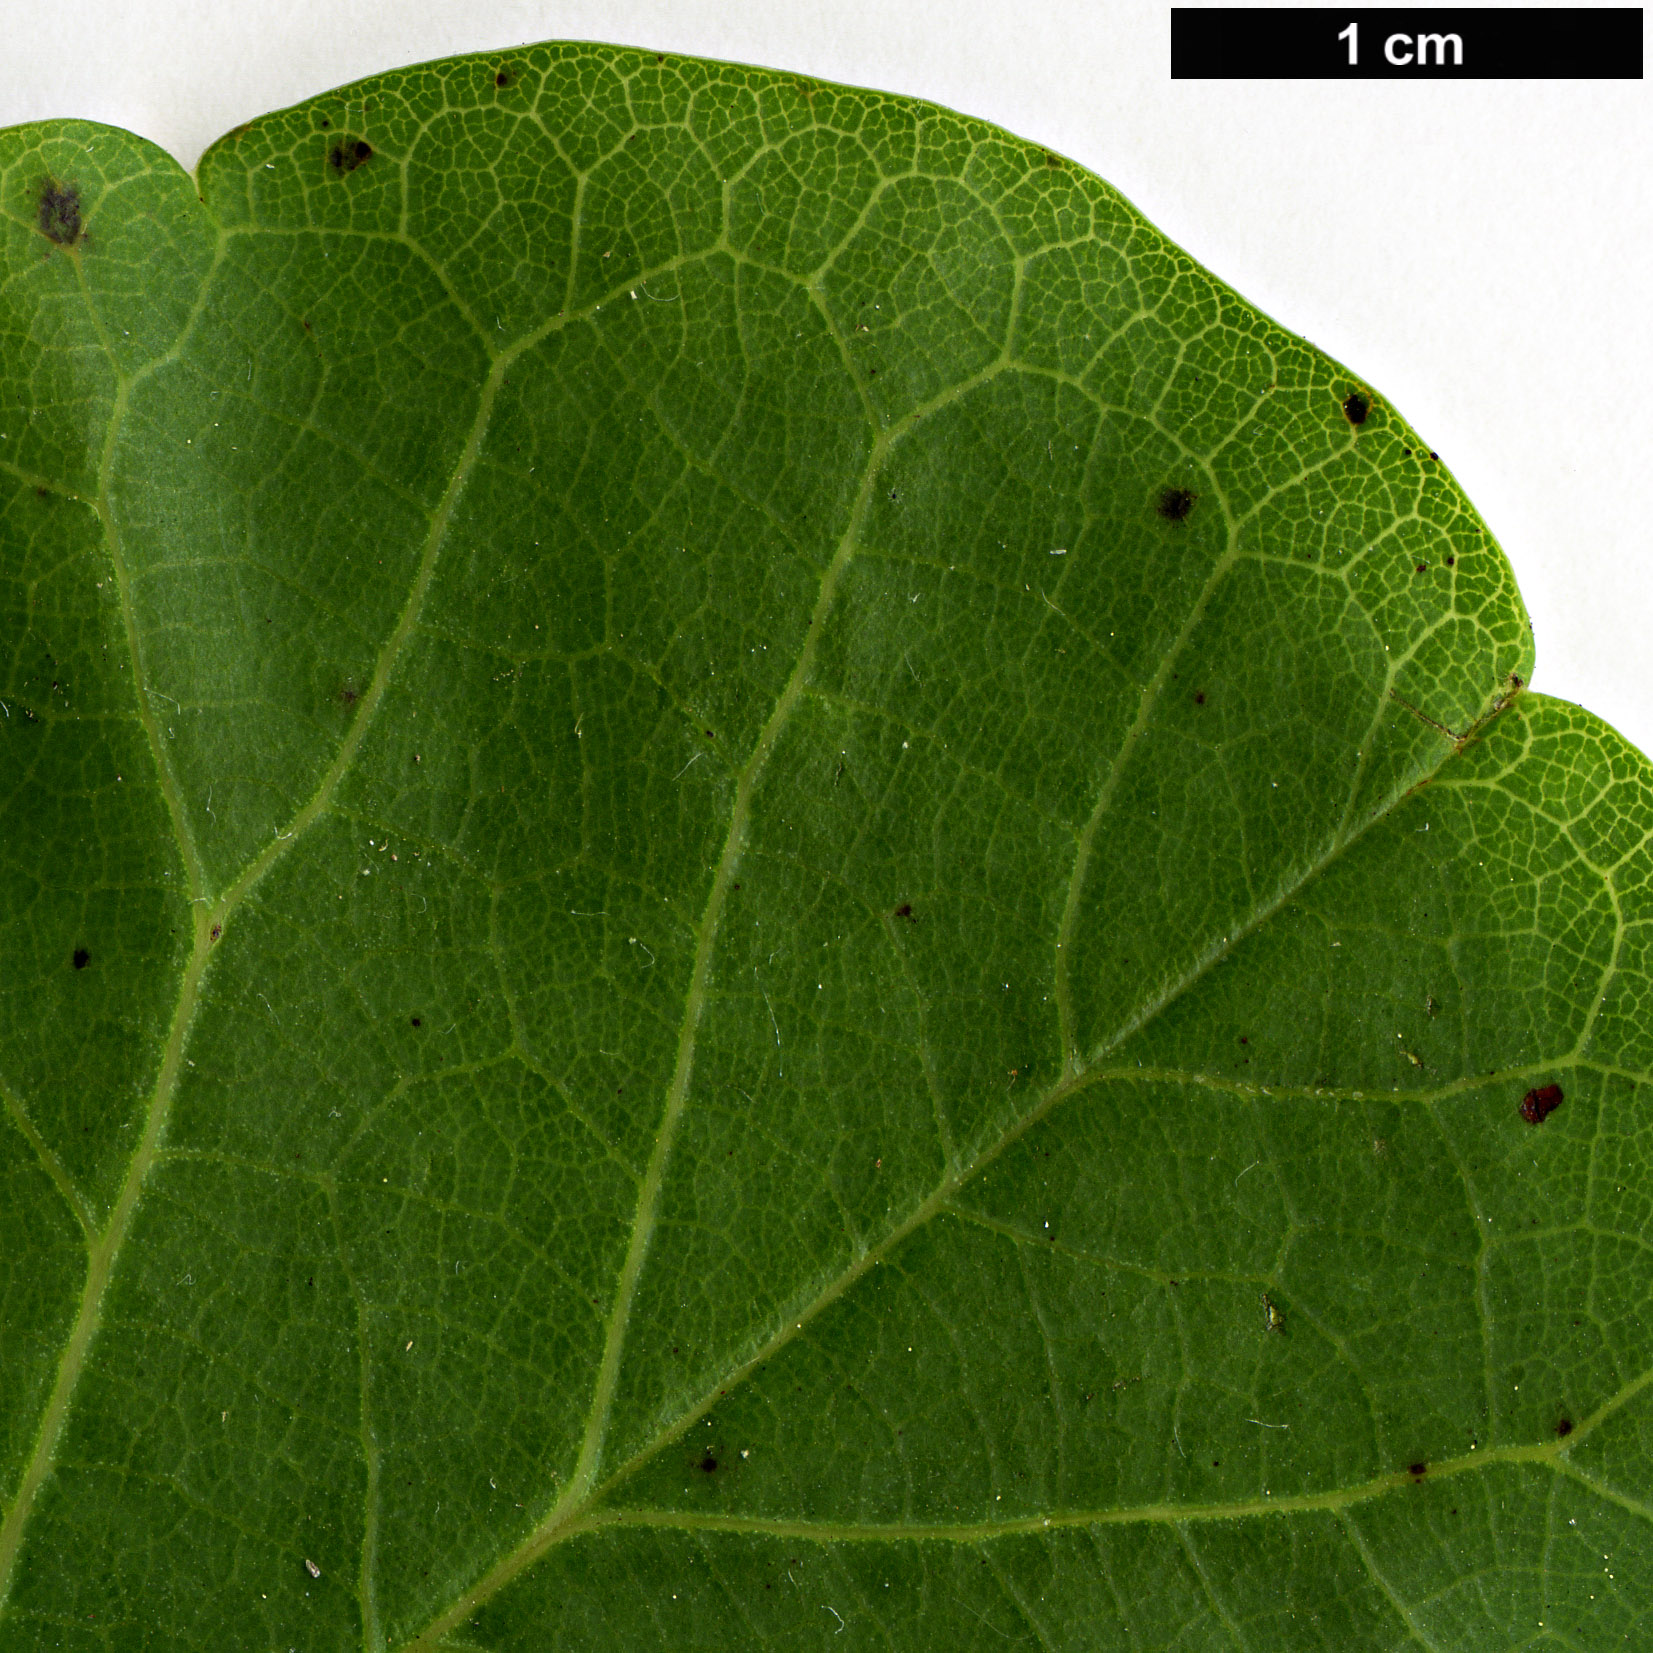 High resolution image: Family: Fabaceae - Genus: Cercis - Taxon: siliquastrum